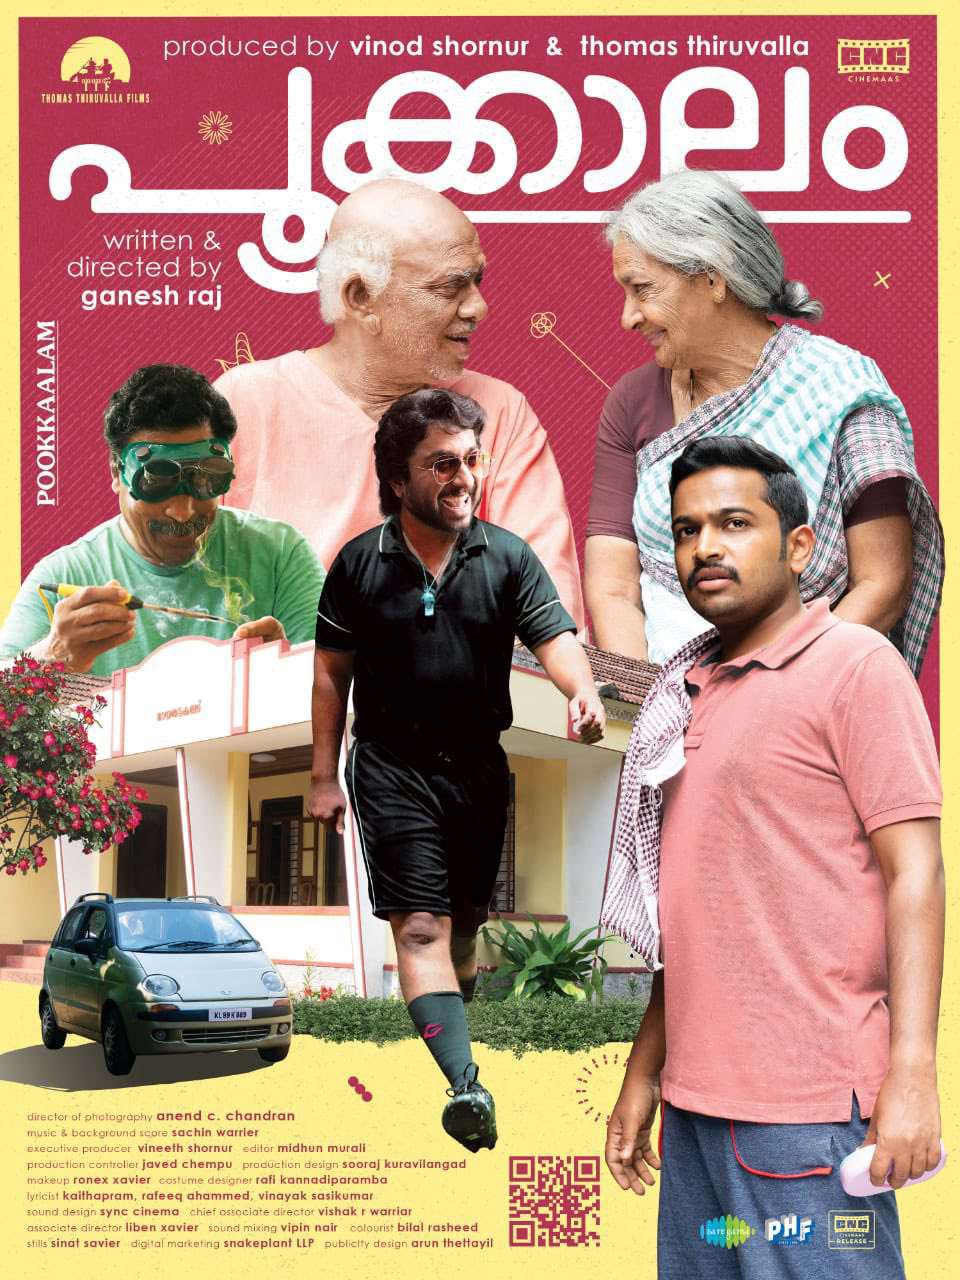 pookalam movie review telugu